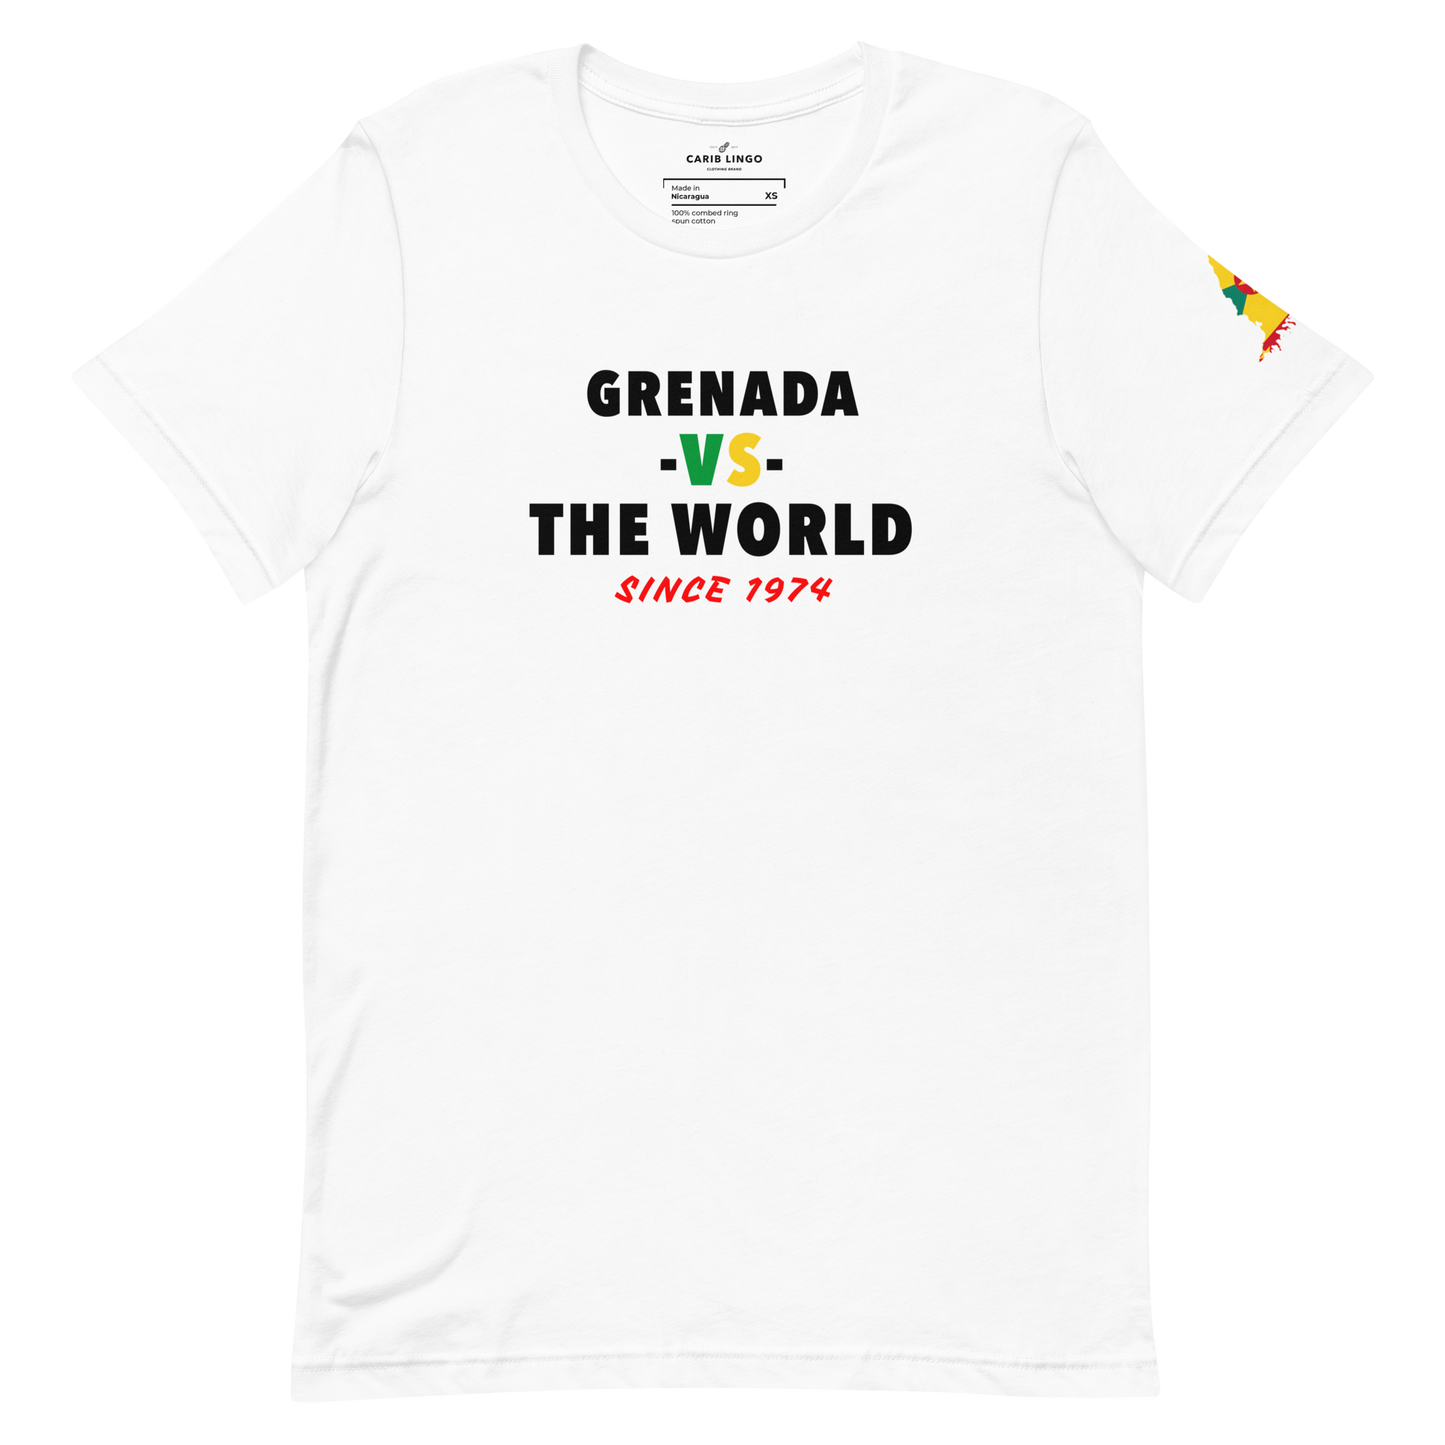 Grenada -vs- The World Unisex t-shirt